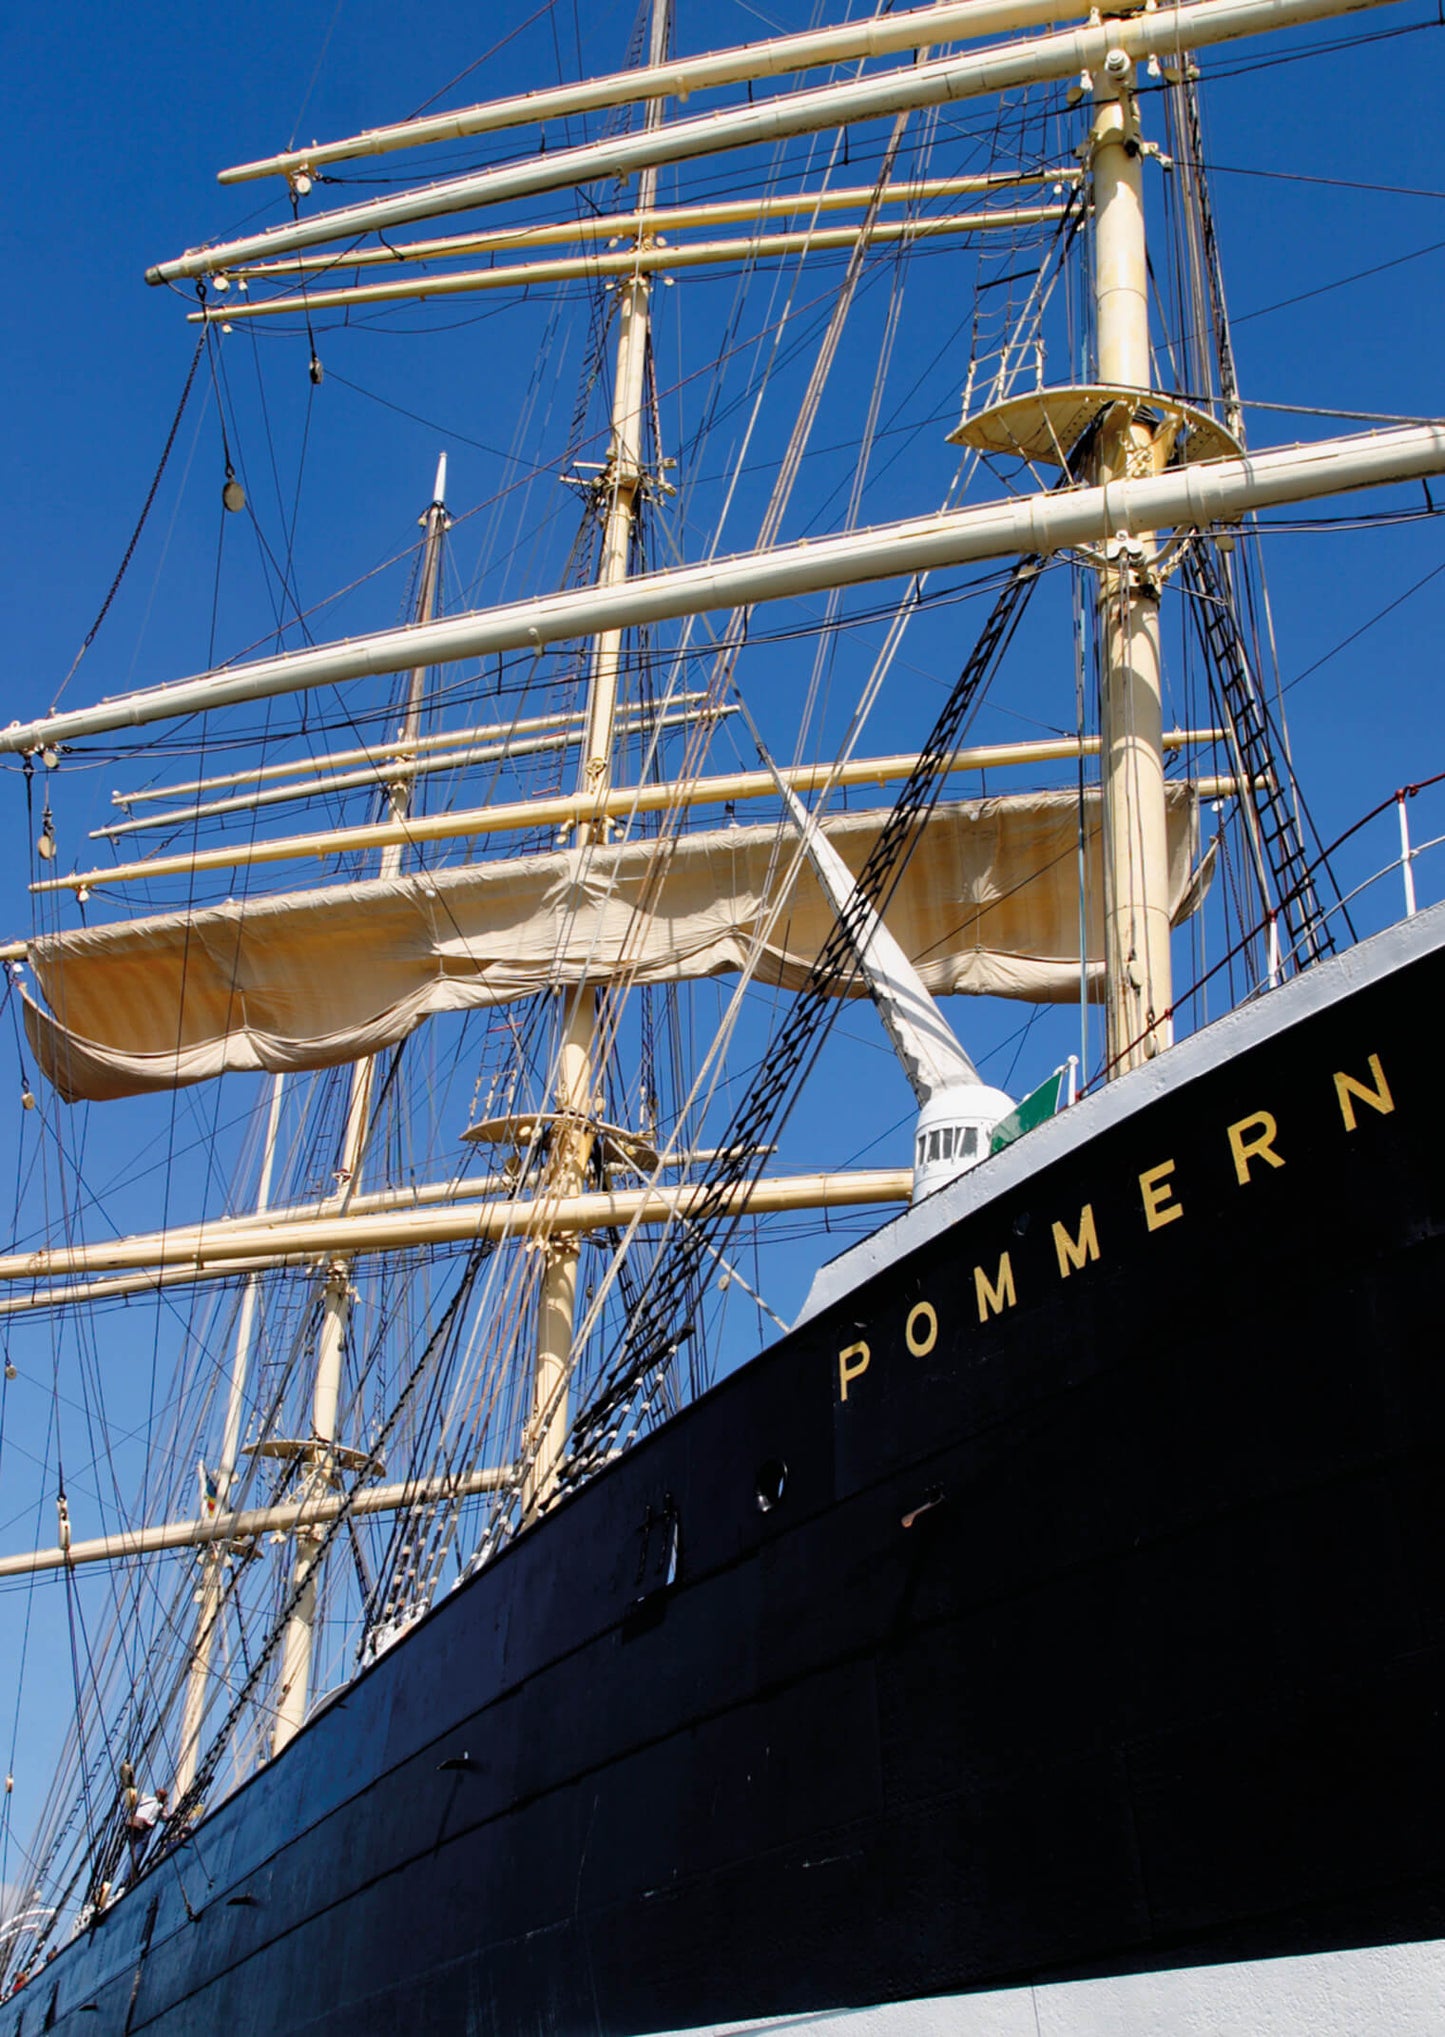 Museum ship Pommern